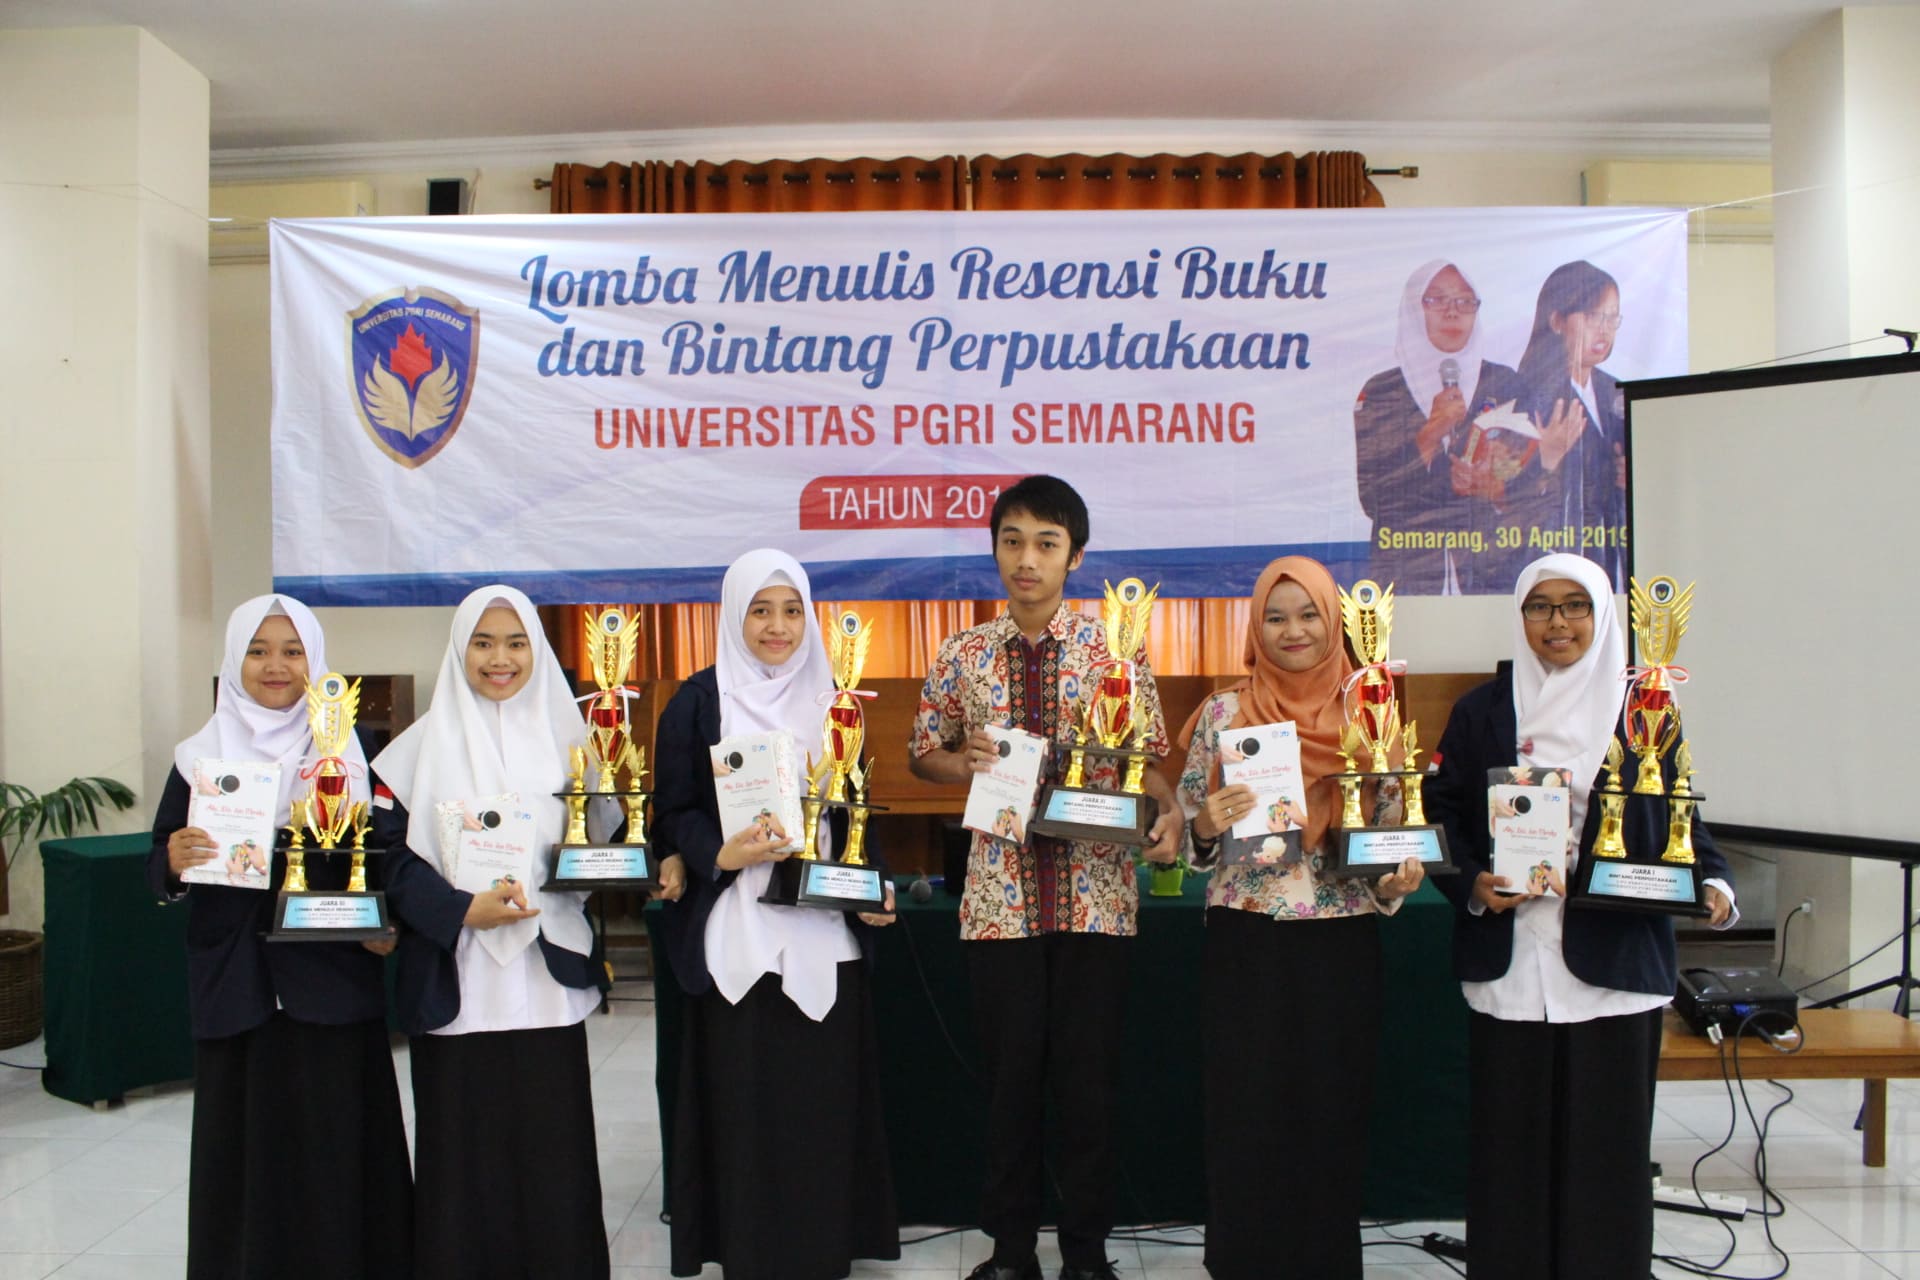 Pemenang Lomba Menulis Resensi Buku dan Bintang Perpustakaan Universitas PGRI Semarang 2019 